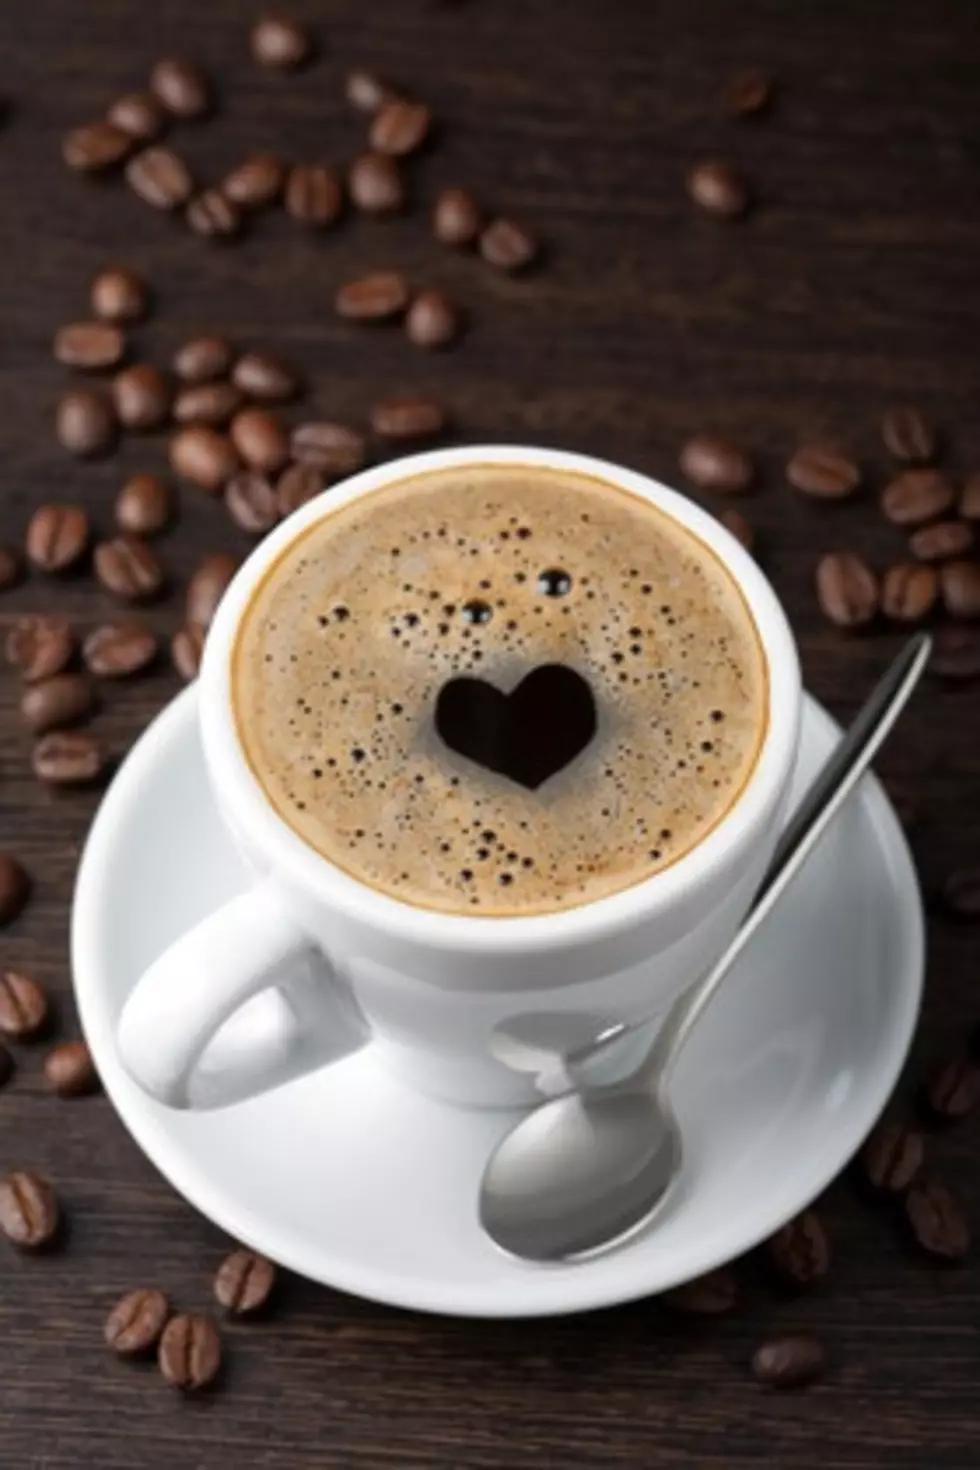 Crazy Coffee Recipe You Will LOVE! [RECIPE]